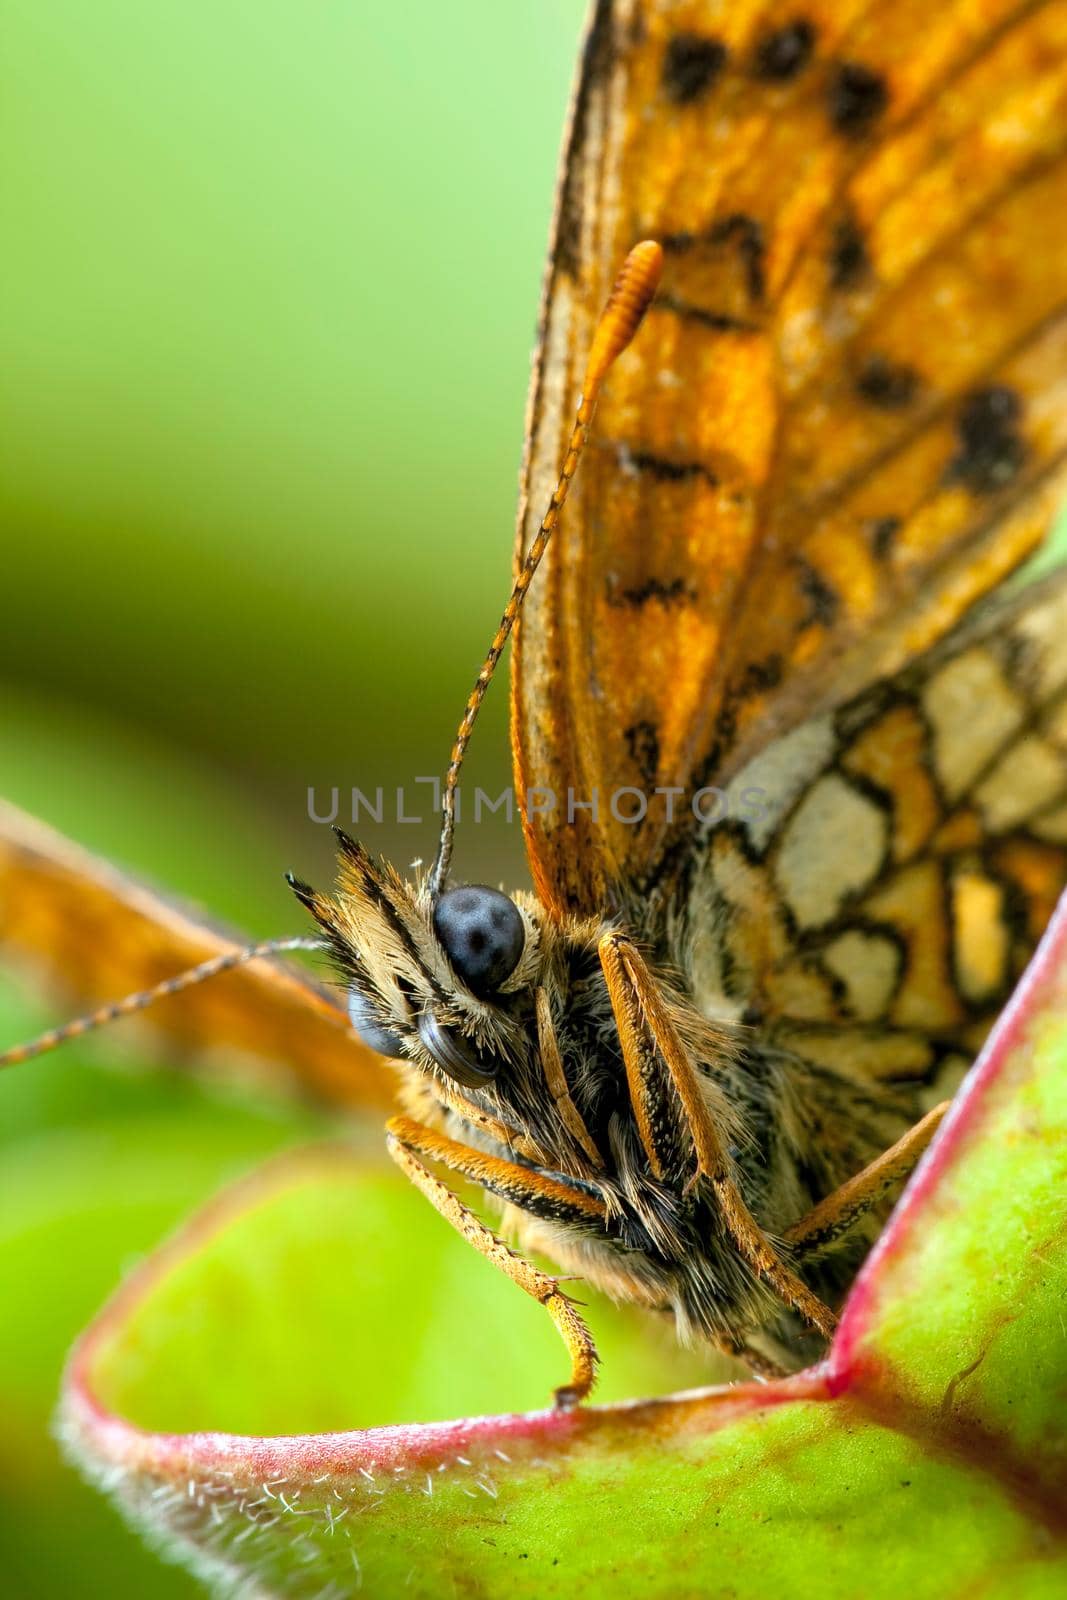 Night butterfly portrait by Lincikas